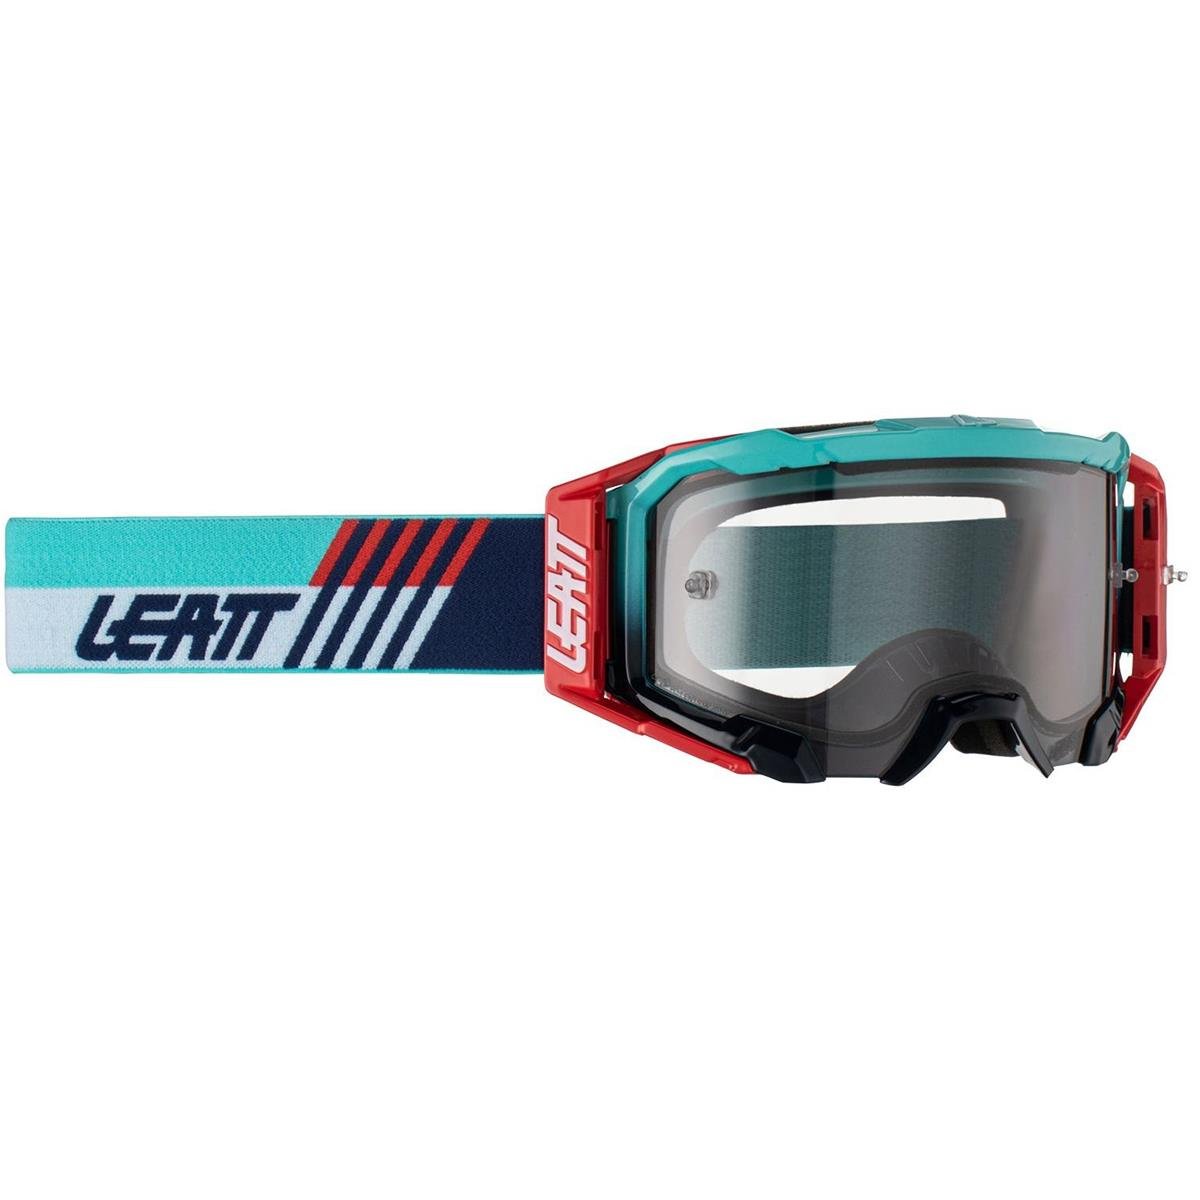 Leatt Goggle Velocity 5.5 Aqua - Light Gray